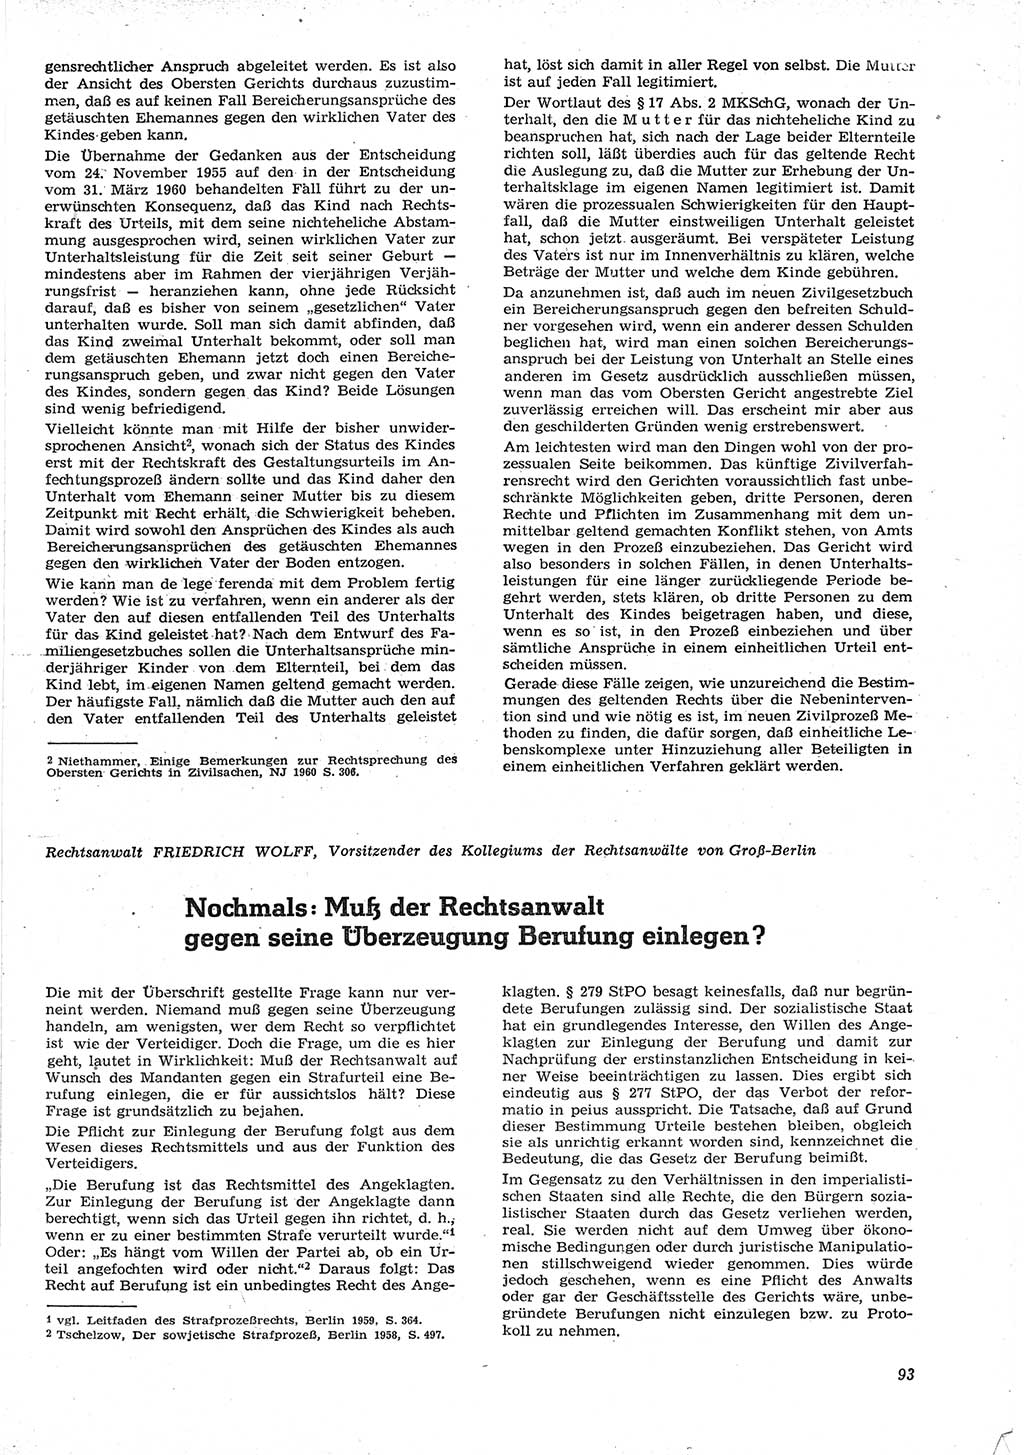 Neue Justiz (NJ), Zeitschrift für Recht und Rechtswissenschaft [Deutsche Demokratische Republik (DDR)], 15. Jahrgang 1961, Seite 93 (NJ DDR 1961, S. 93)